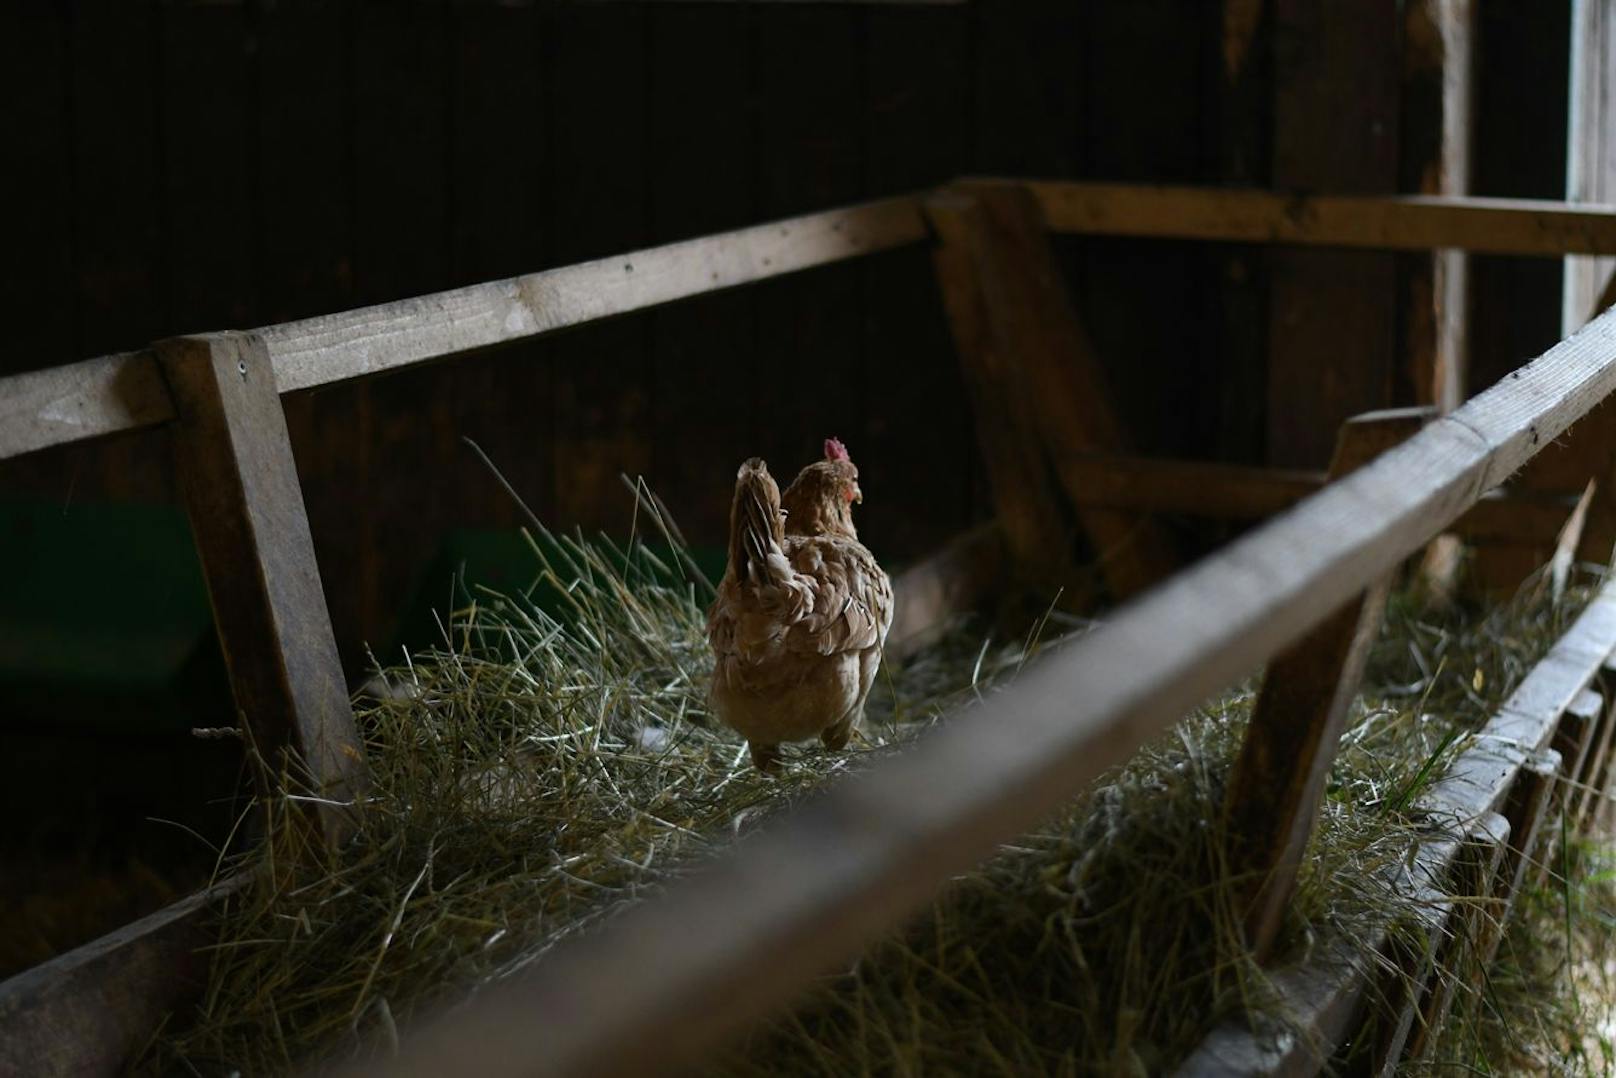 Die vielen Hühner legen an den lustigsten Stellen ihre Eier, die sofort wieder verfüttert werden um die Population zu kontrollieren. 